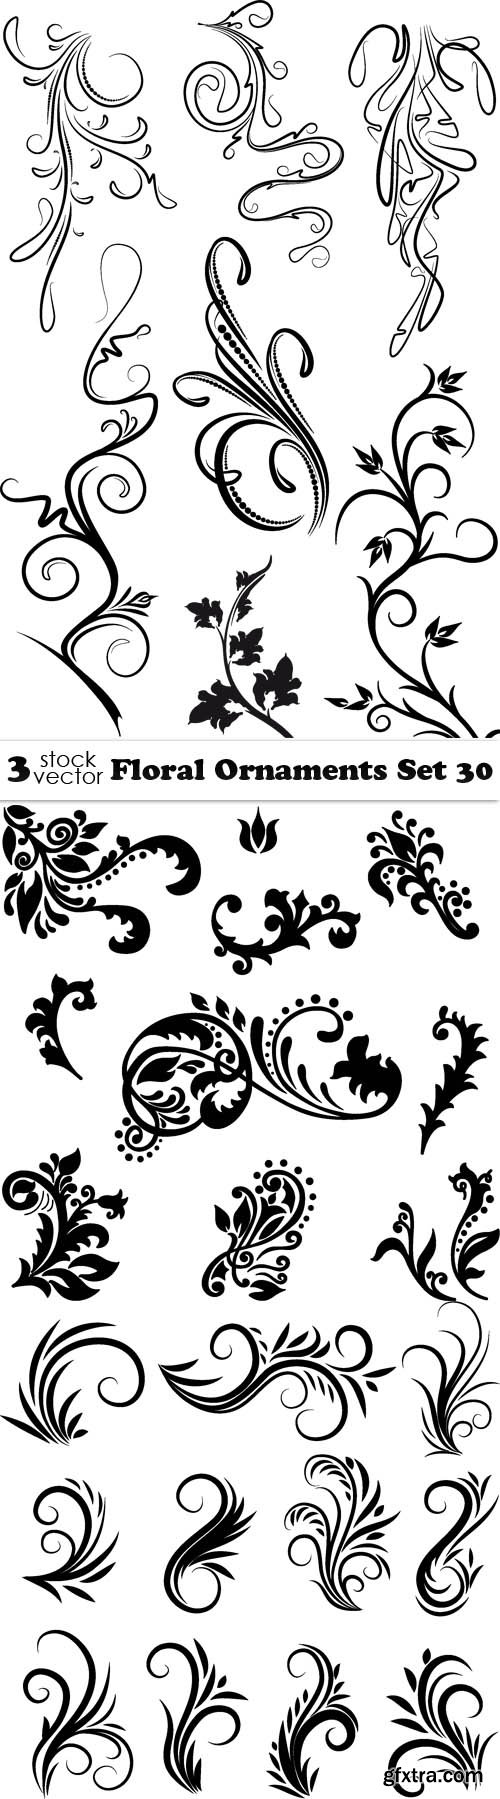 Vectors - Floral Ornaments Set 30